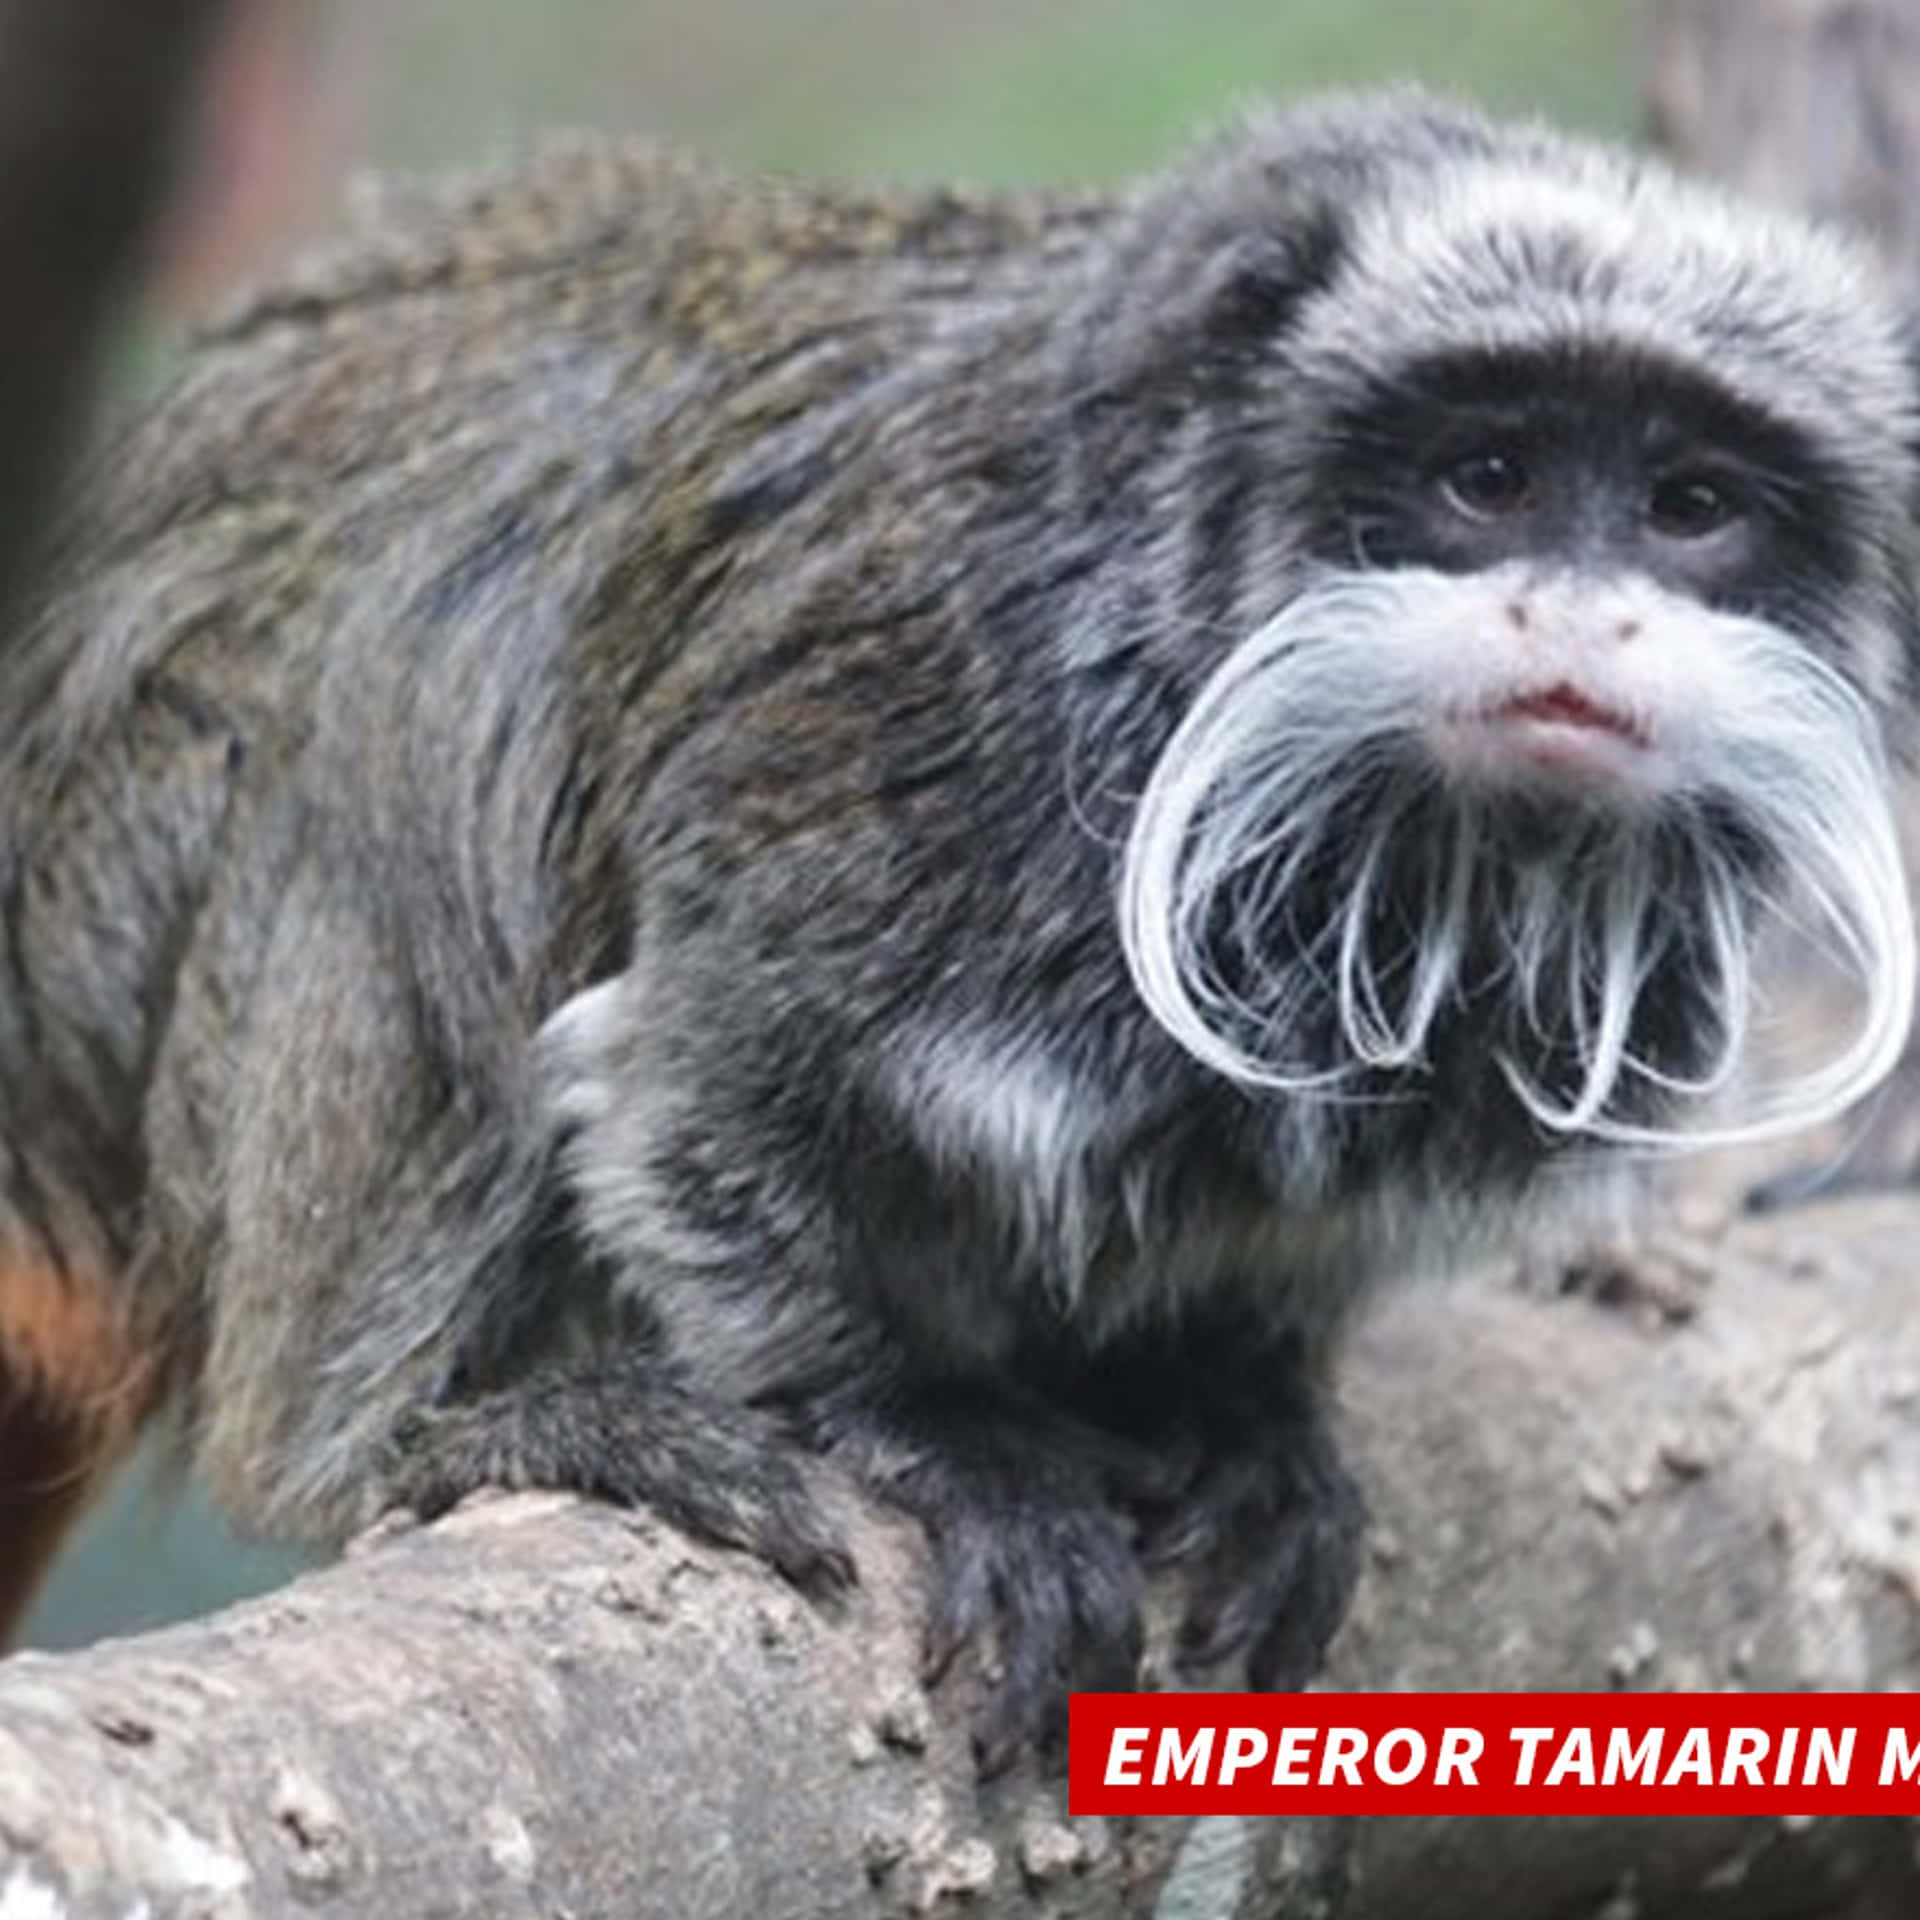 Emperor Tamarin Monkeys Are A Rare Species